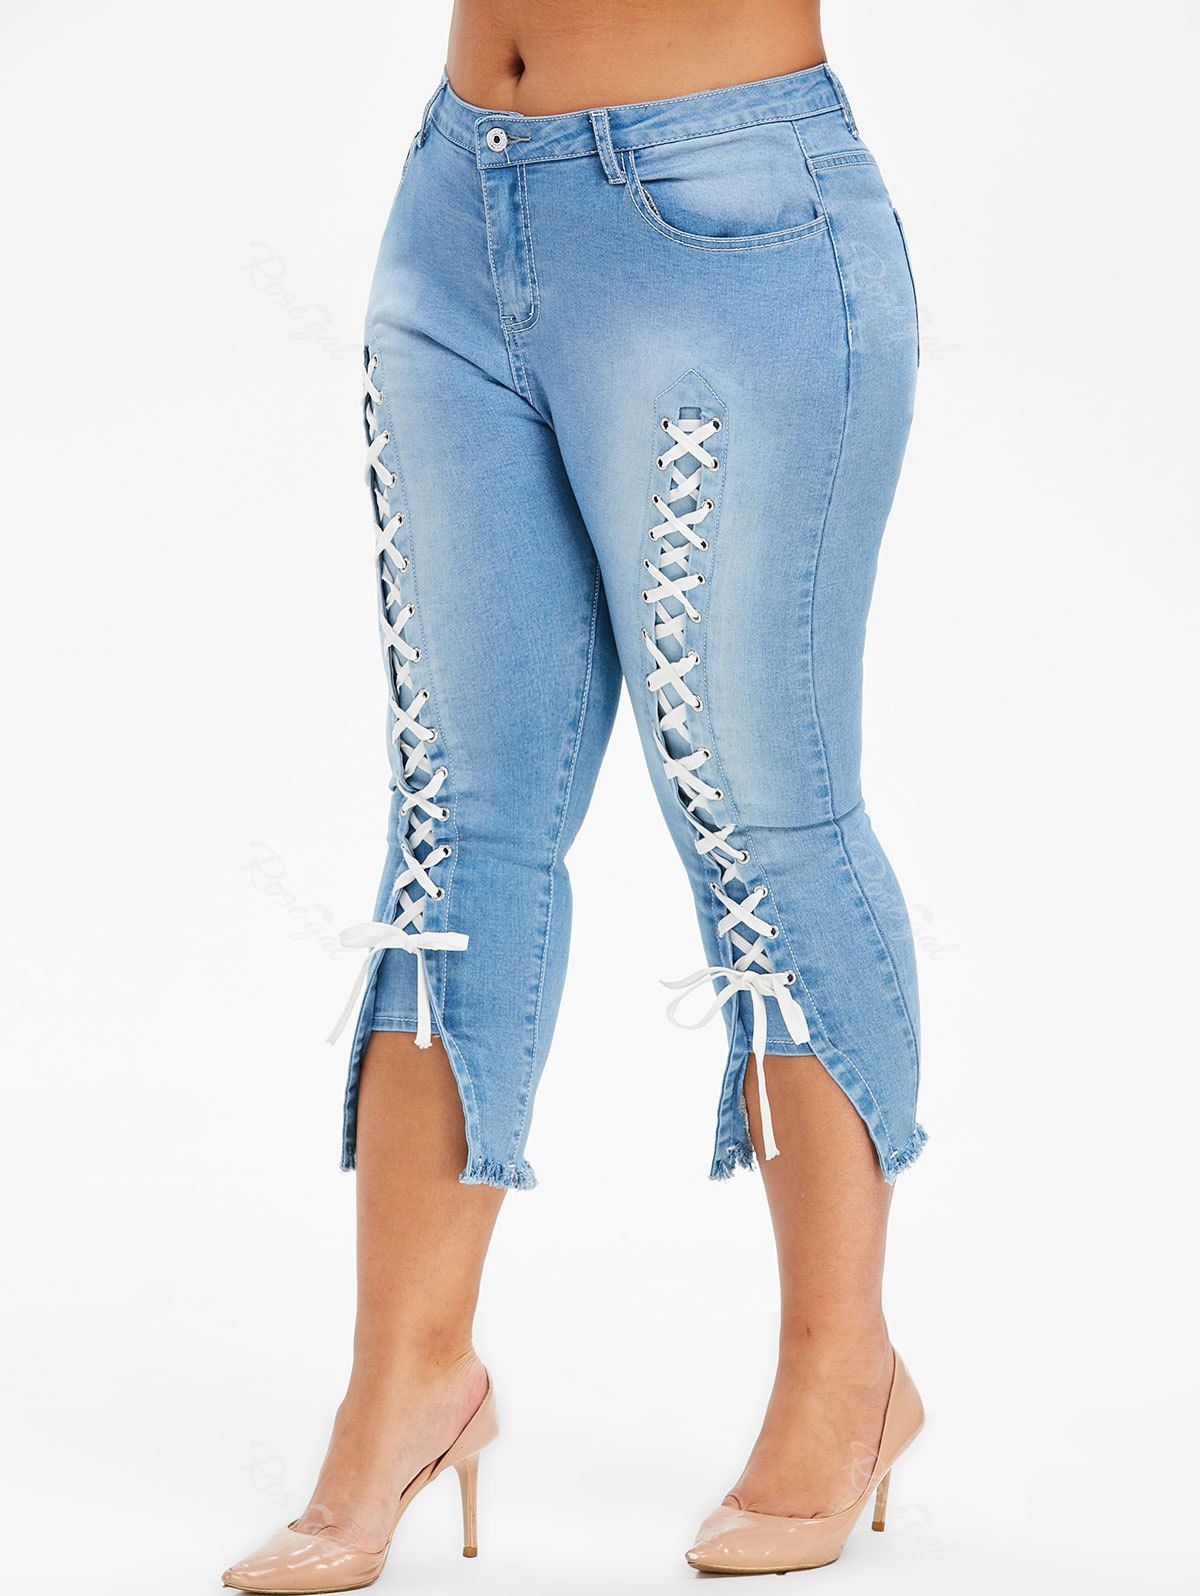 Plus Size Lace Up Capri Frayed Jeans - 1x